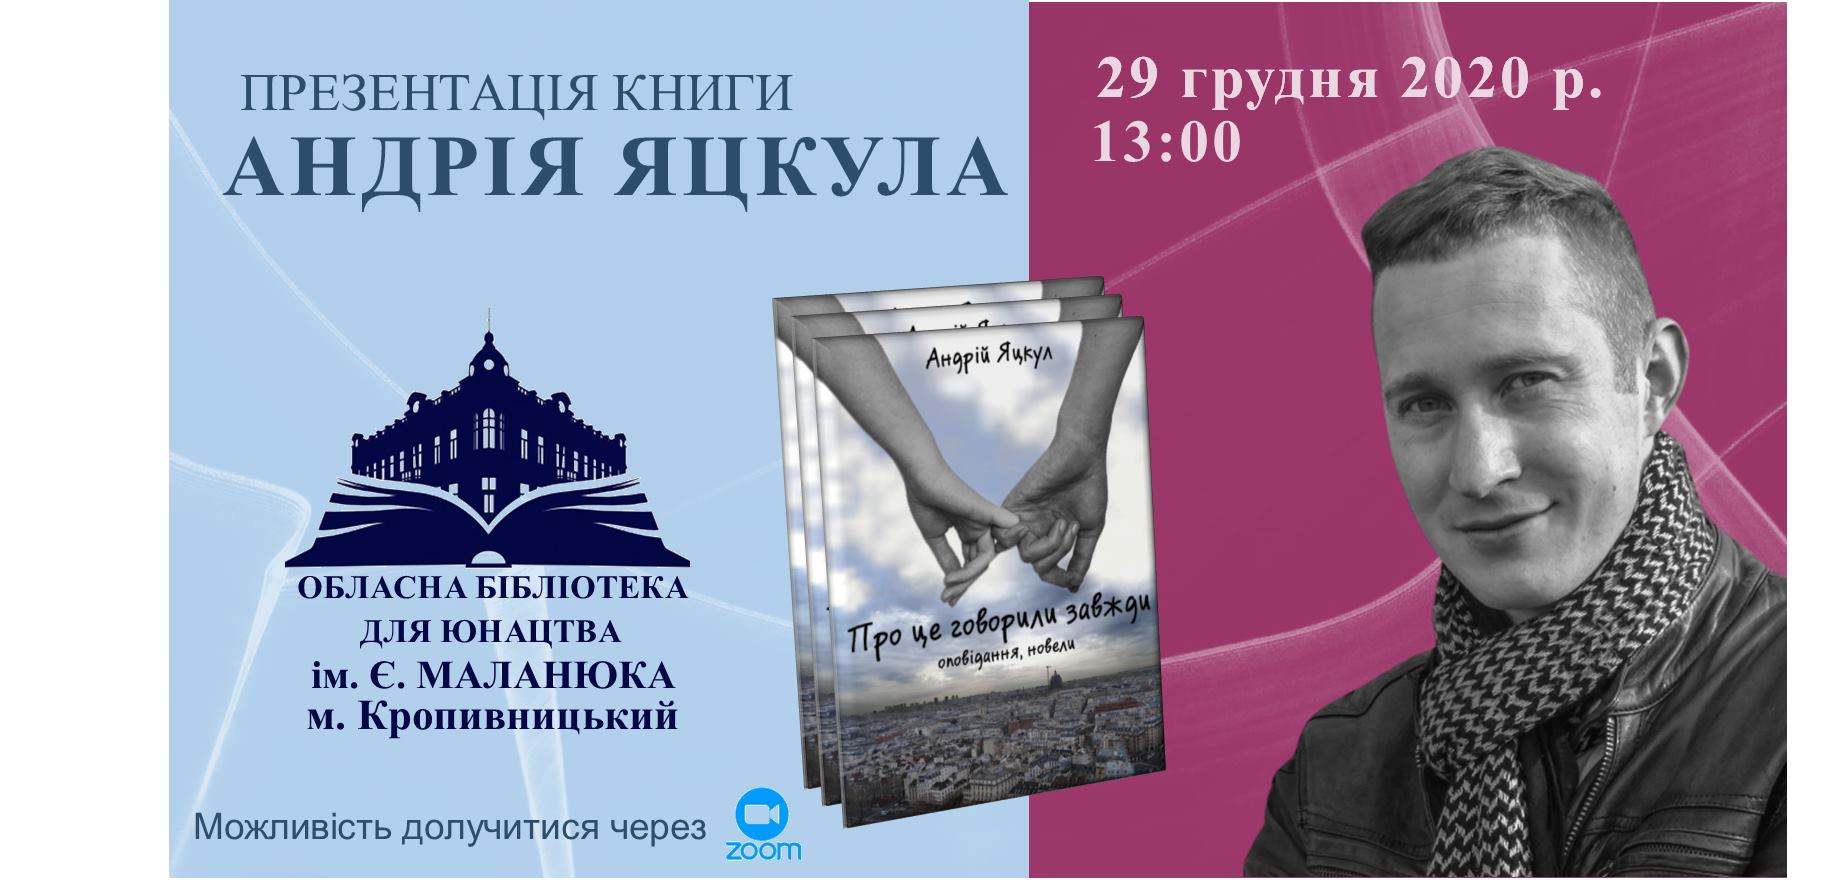 Книголюбів Кіровоградщини запрошують на презентацію книги Андрія Яцкула “Про це говорили завжди”